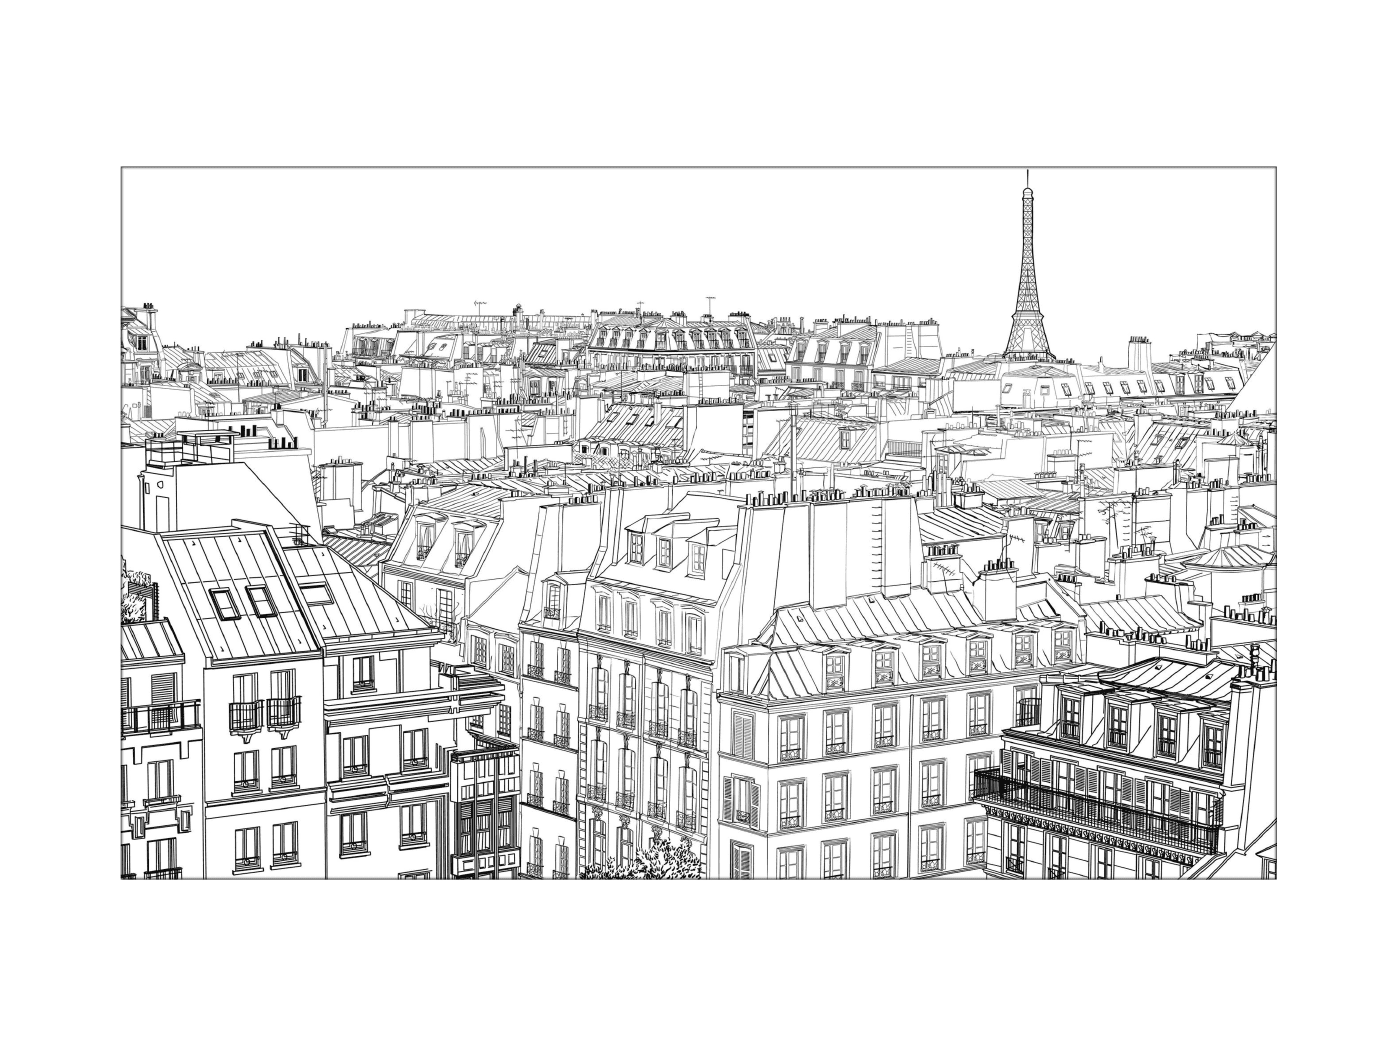  नौवेवे इमारतों शहर पेरिस 